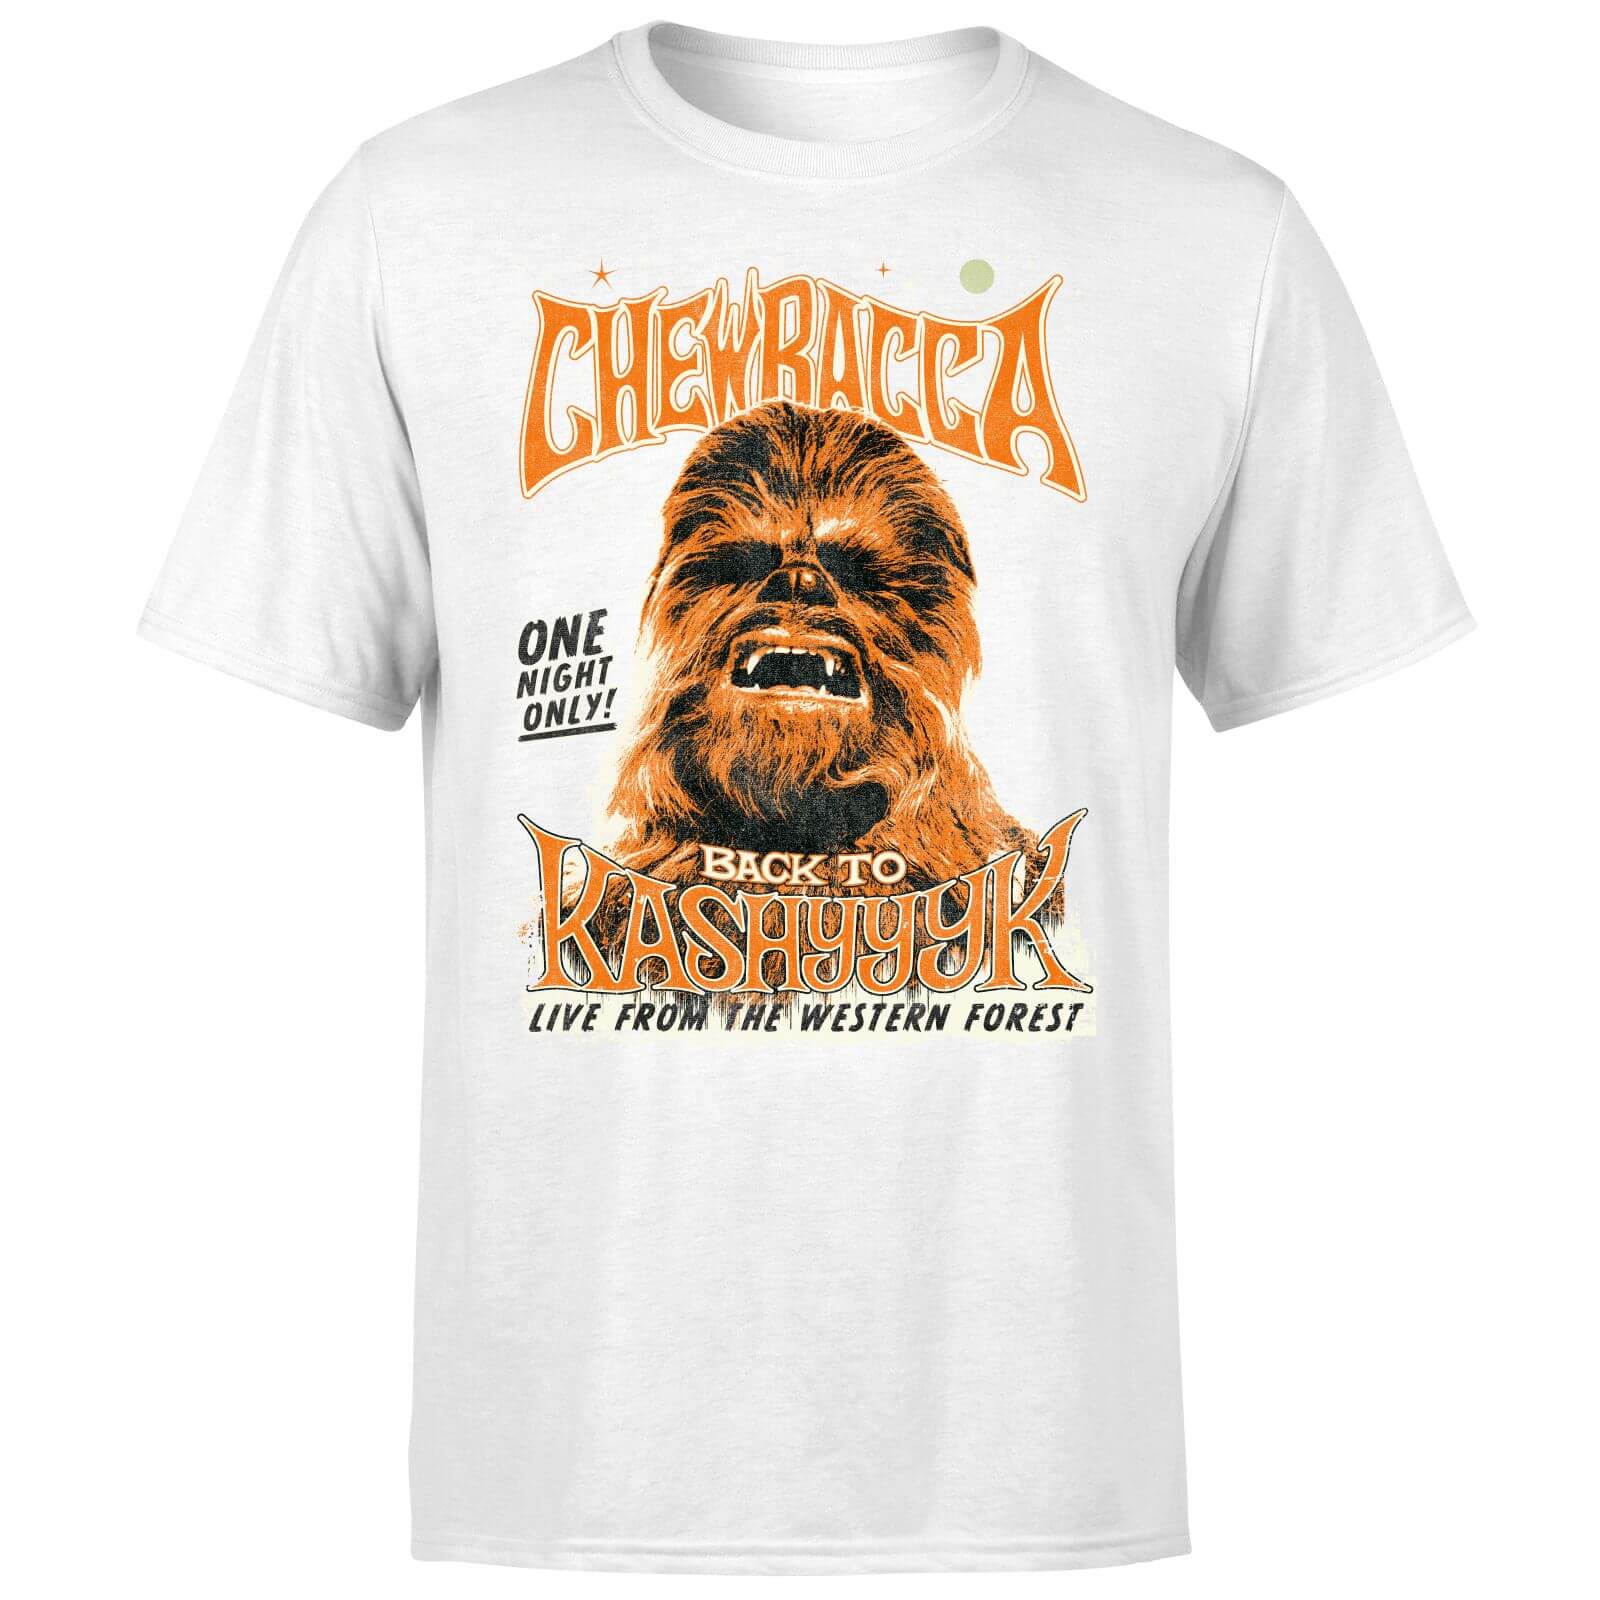 chewbacca shirt